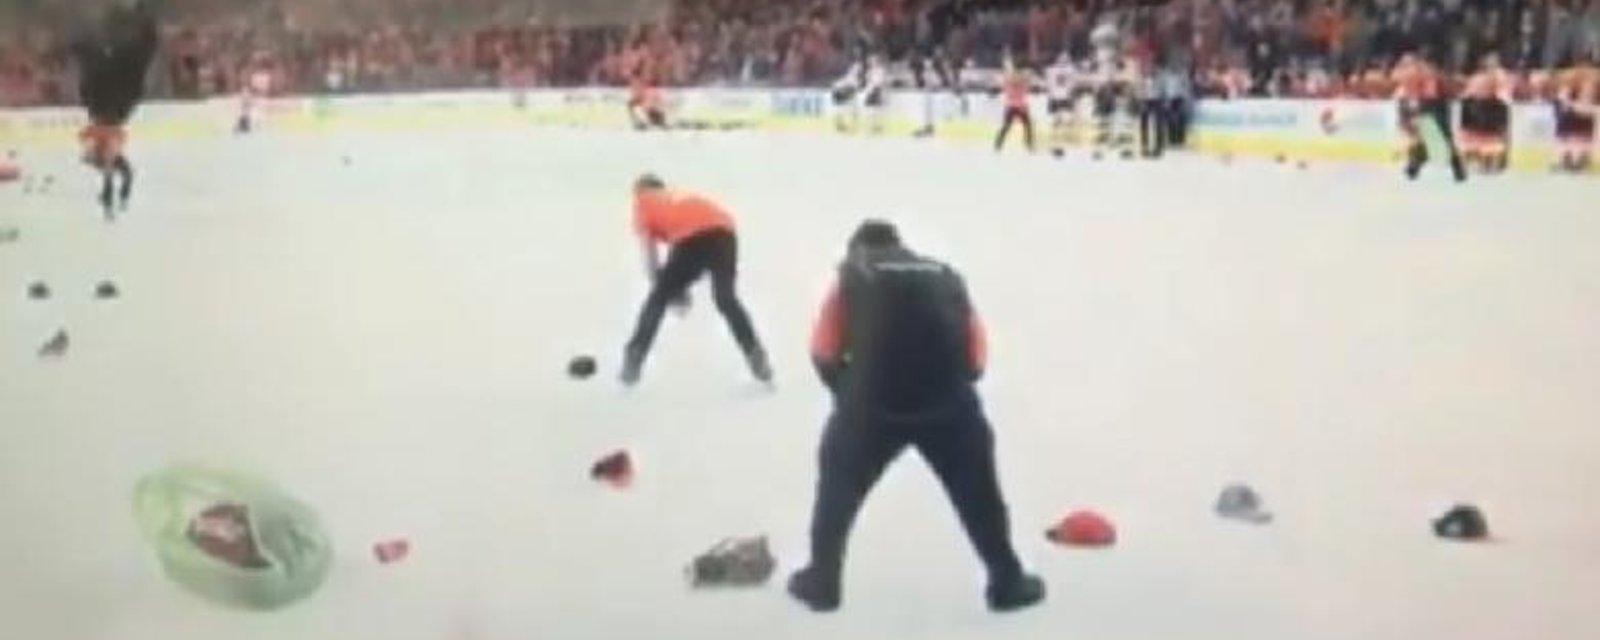 Les fans des Flyers lancent vraiment n'importe quoi sur la glace!